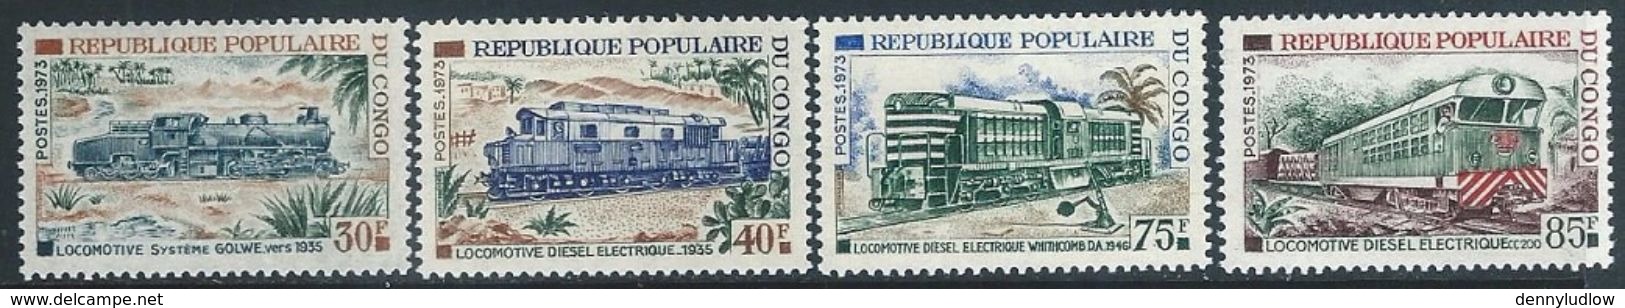 Congo   1973 Sc#284-7  Trains Set MNH**  2016 Scott Value $14.75 - Trains